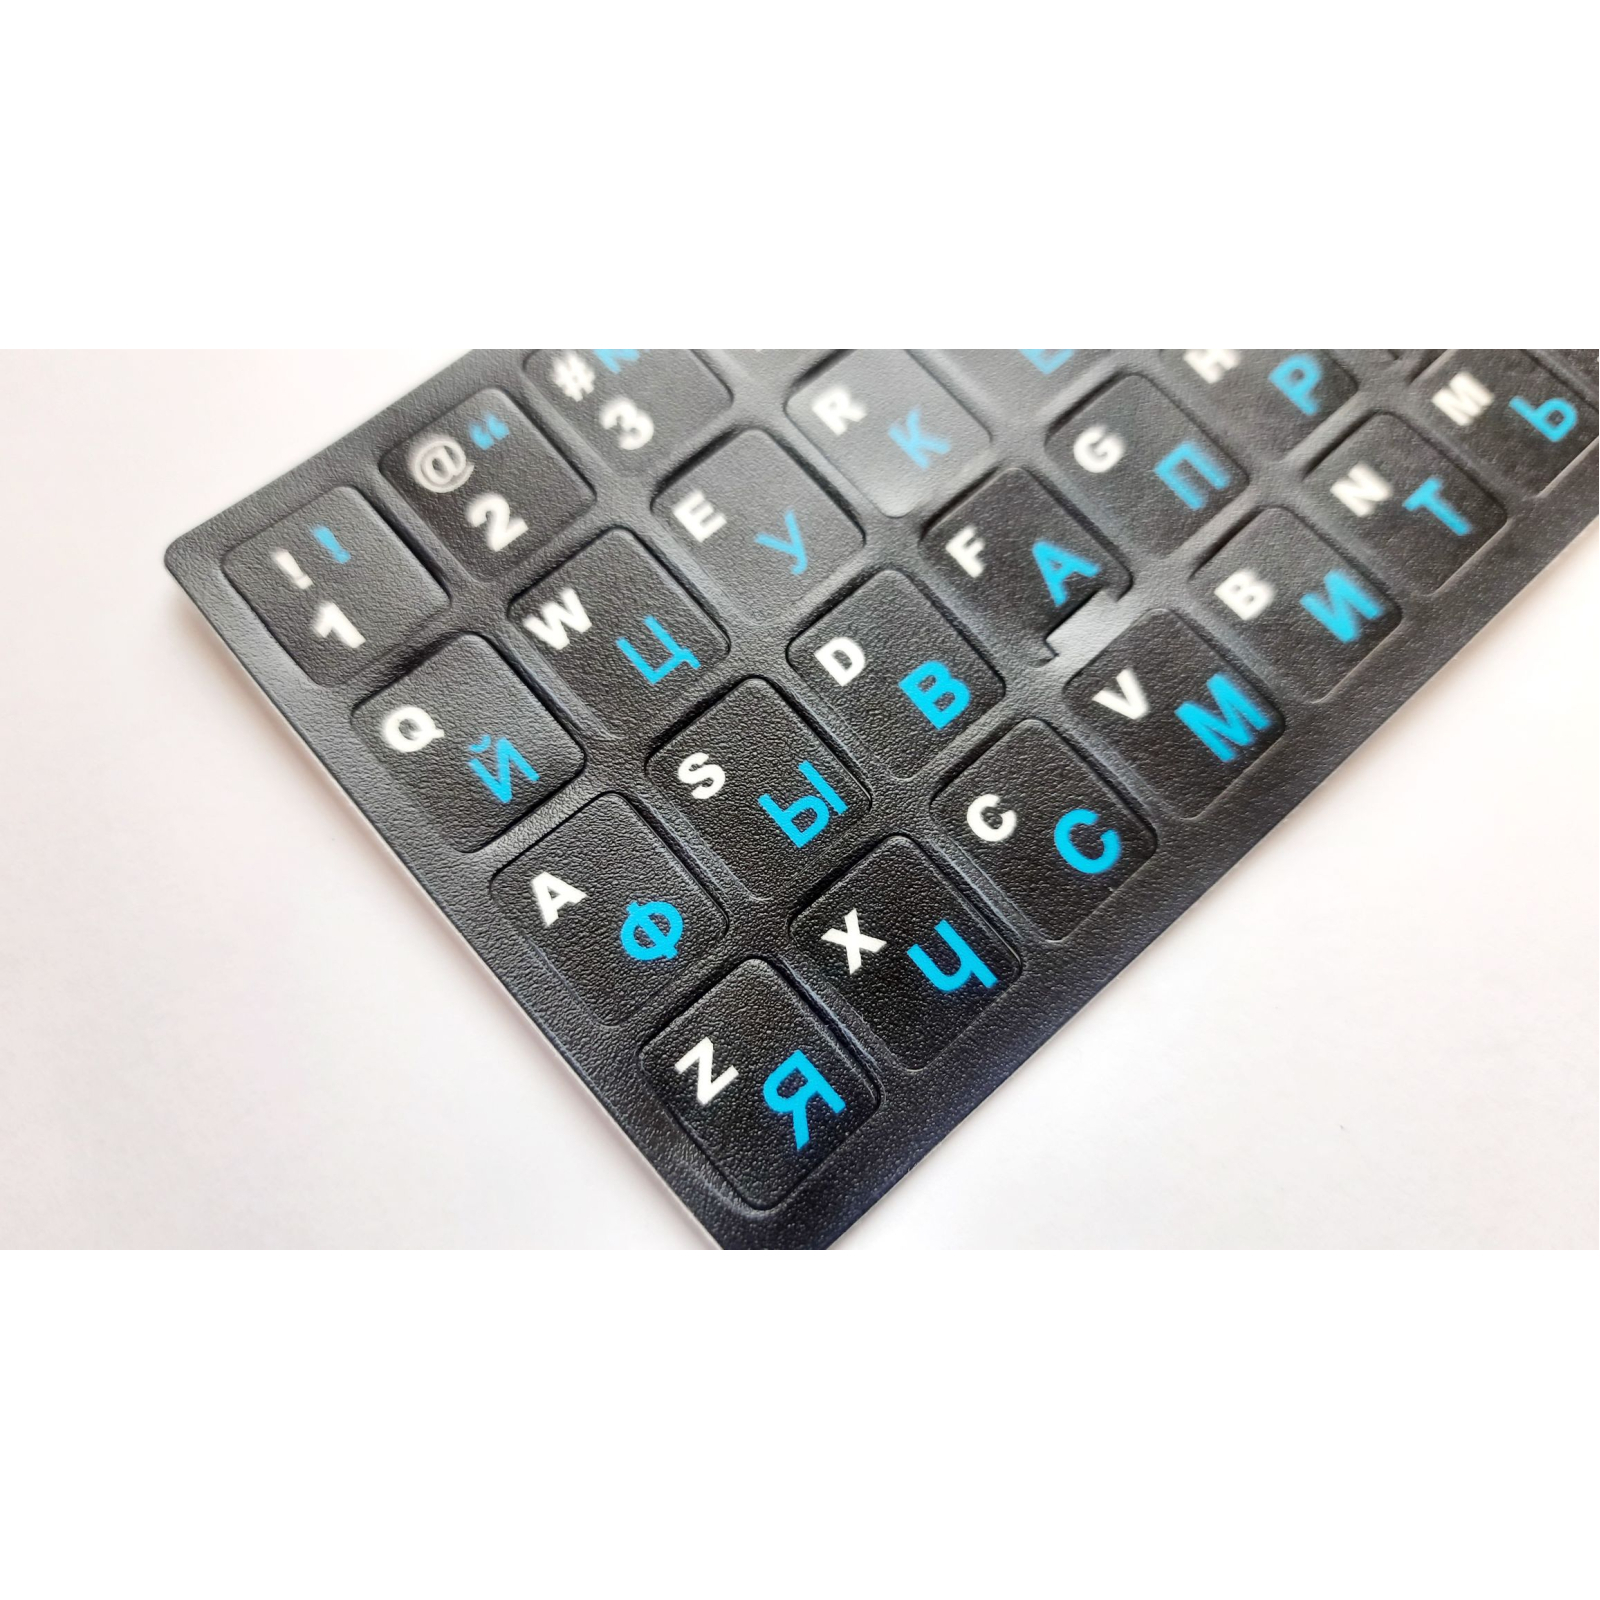 Наклейка на клавиатуру AlSoft непрозрачная EN/RU (11x13мм) черная (кирилица синяя) texture (A43978) изображение 2